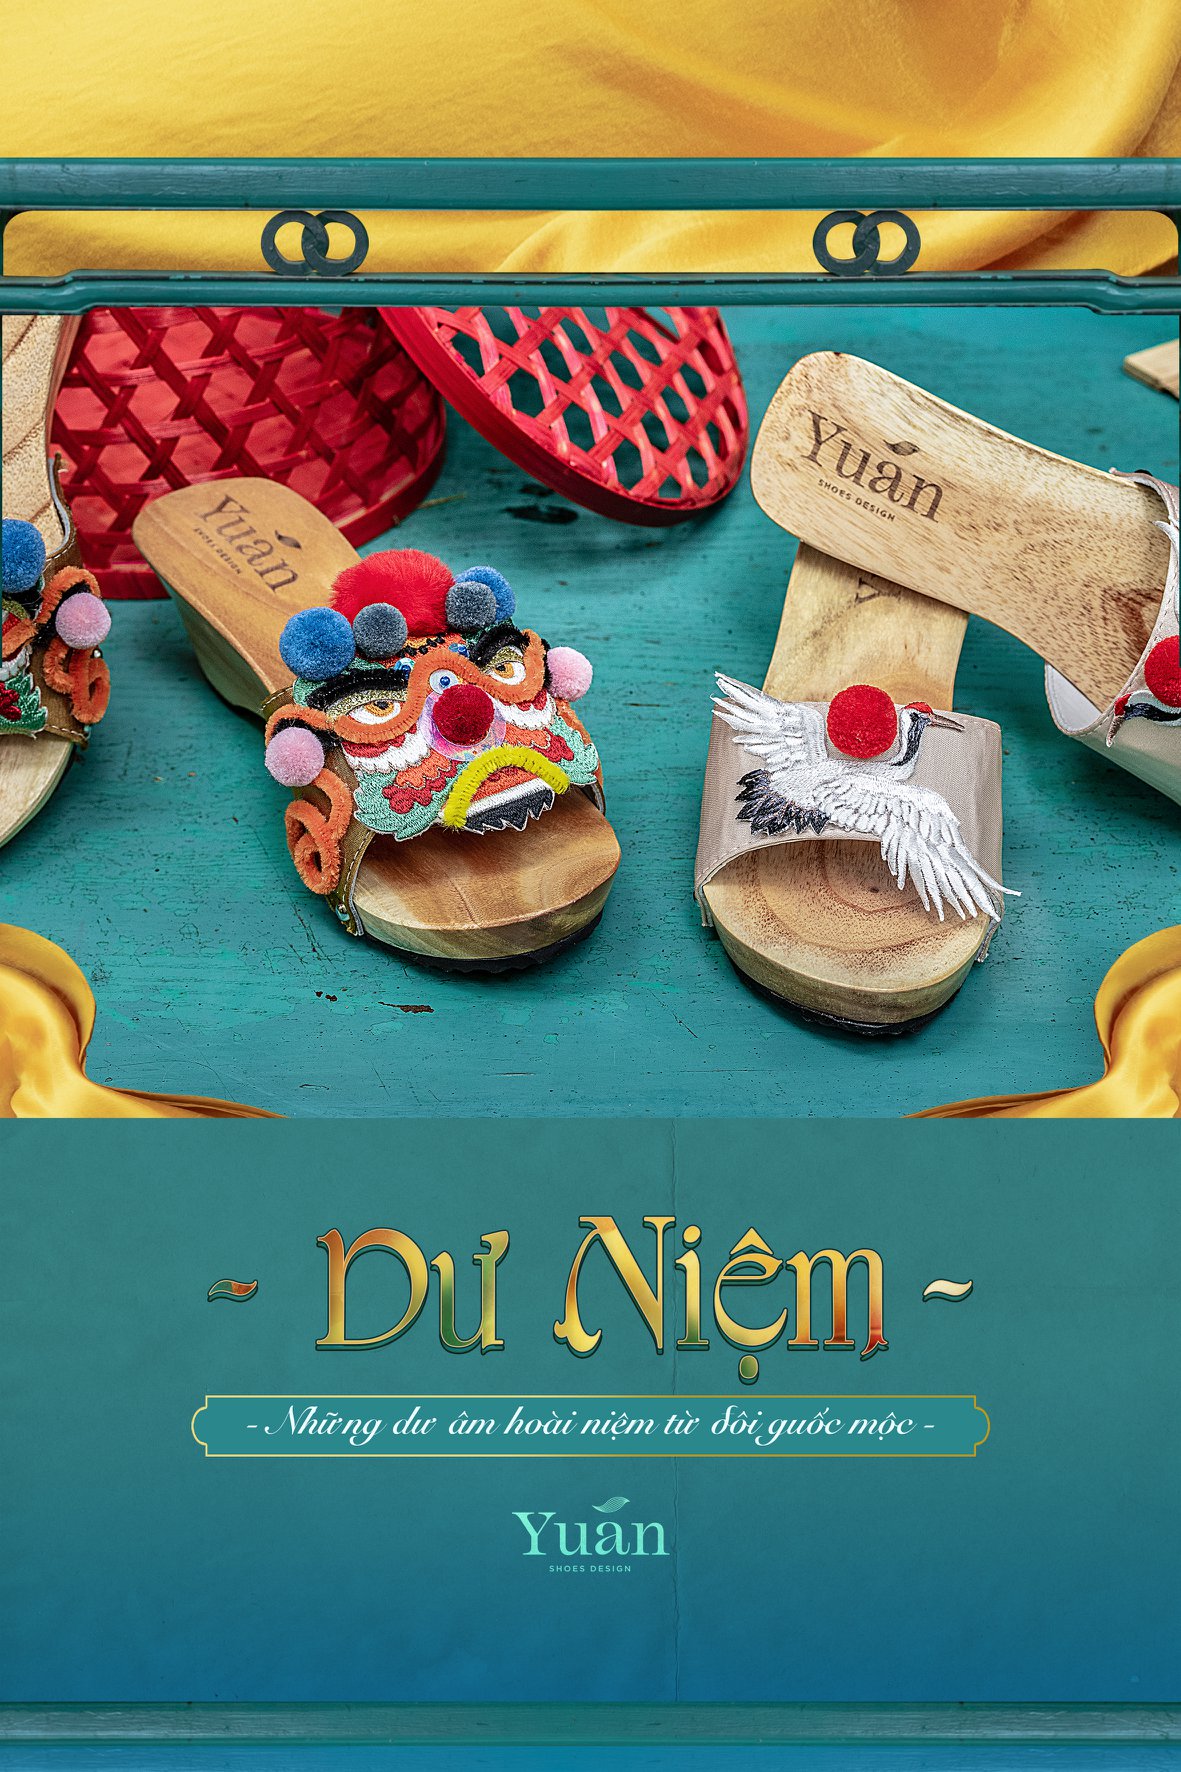 Yuan là một thương hiệu giày thủ công Việt Nam sản xuất guốc